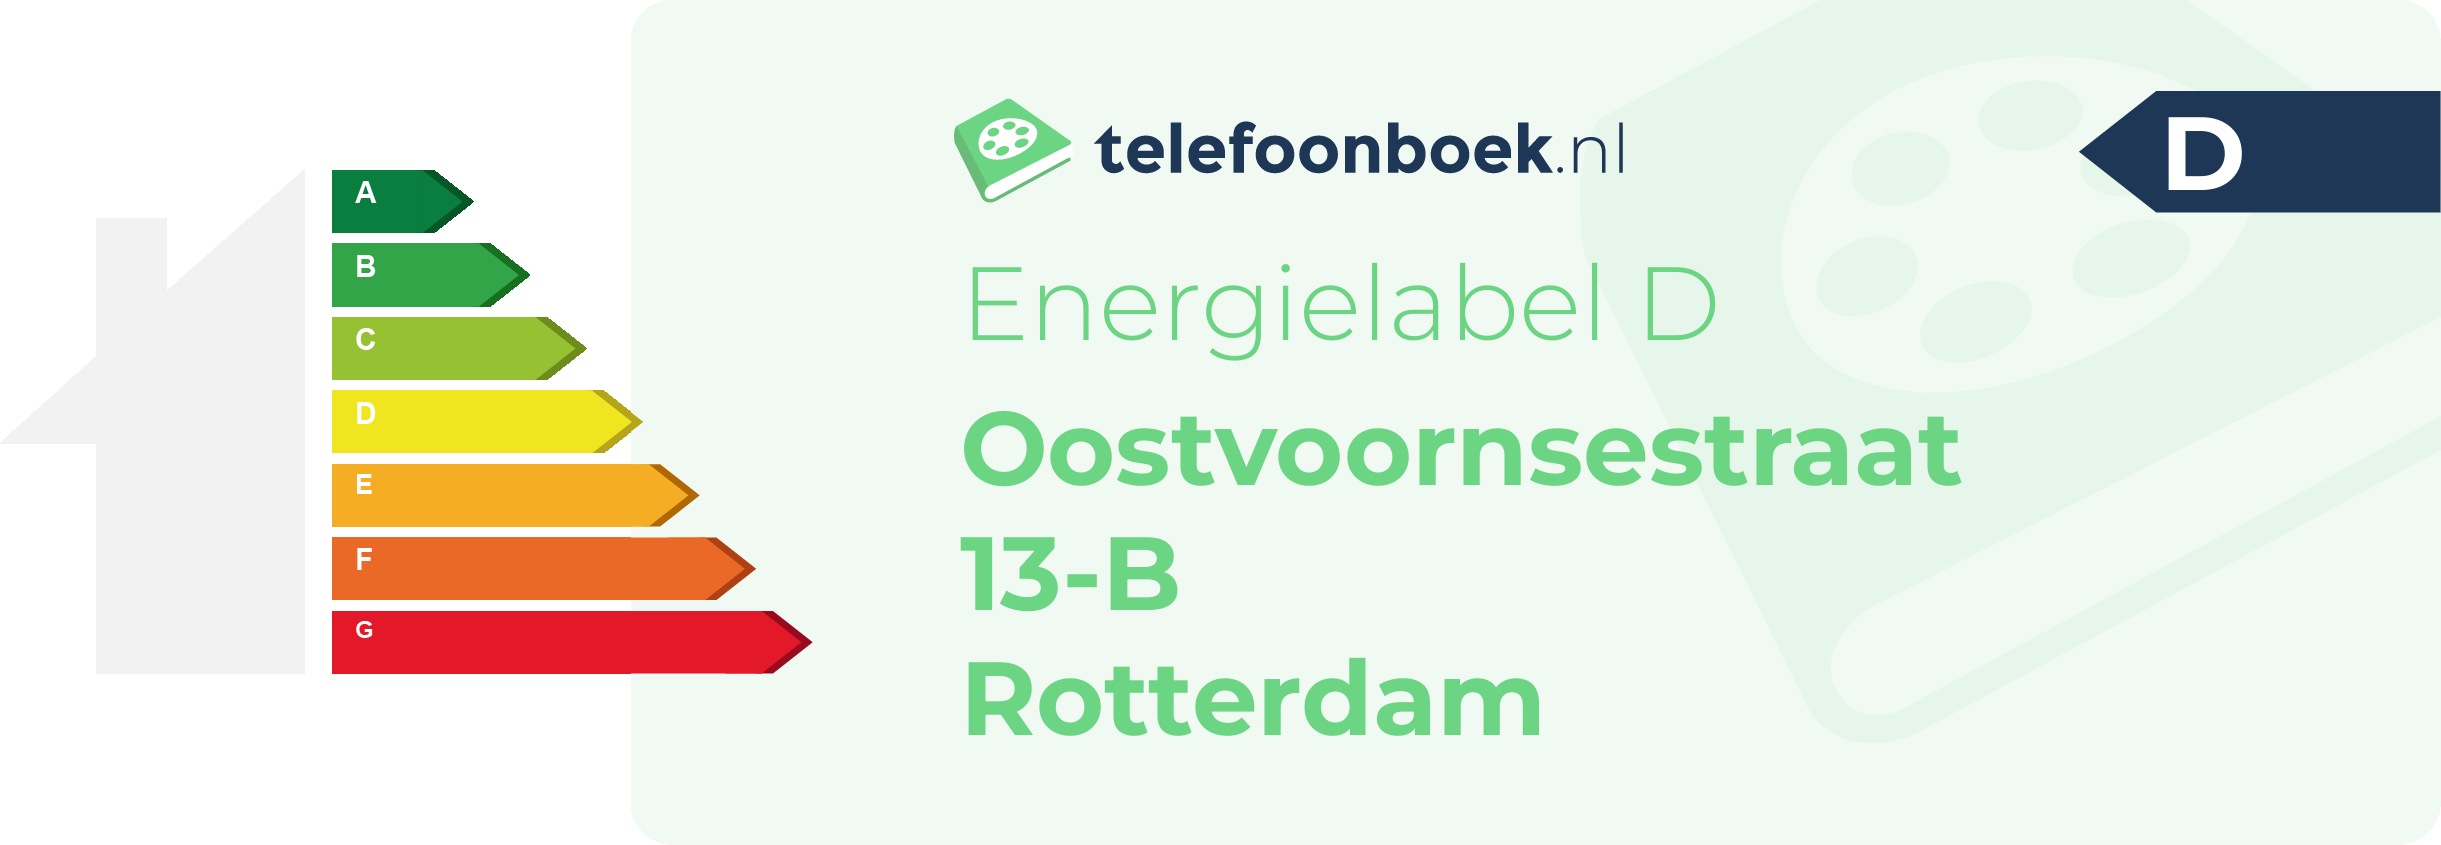 Energielabel Oostvoornsestraat 13-B Rotterdam